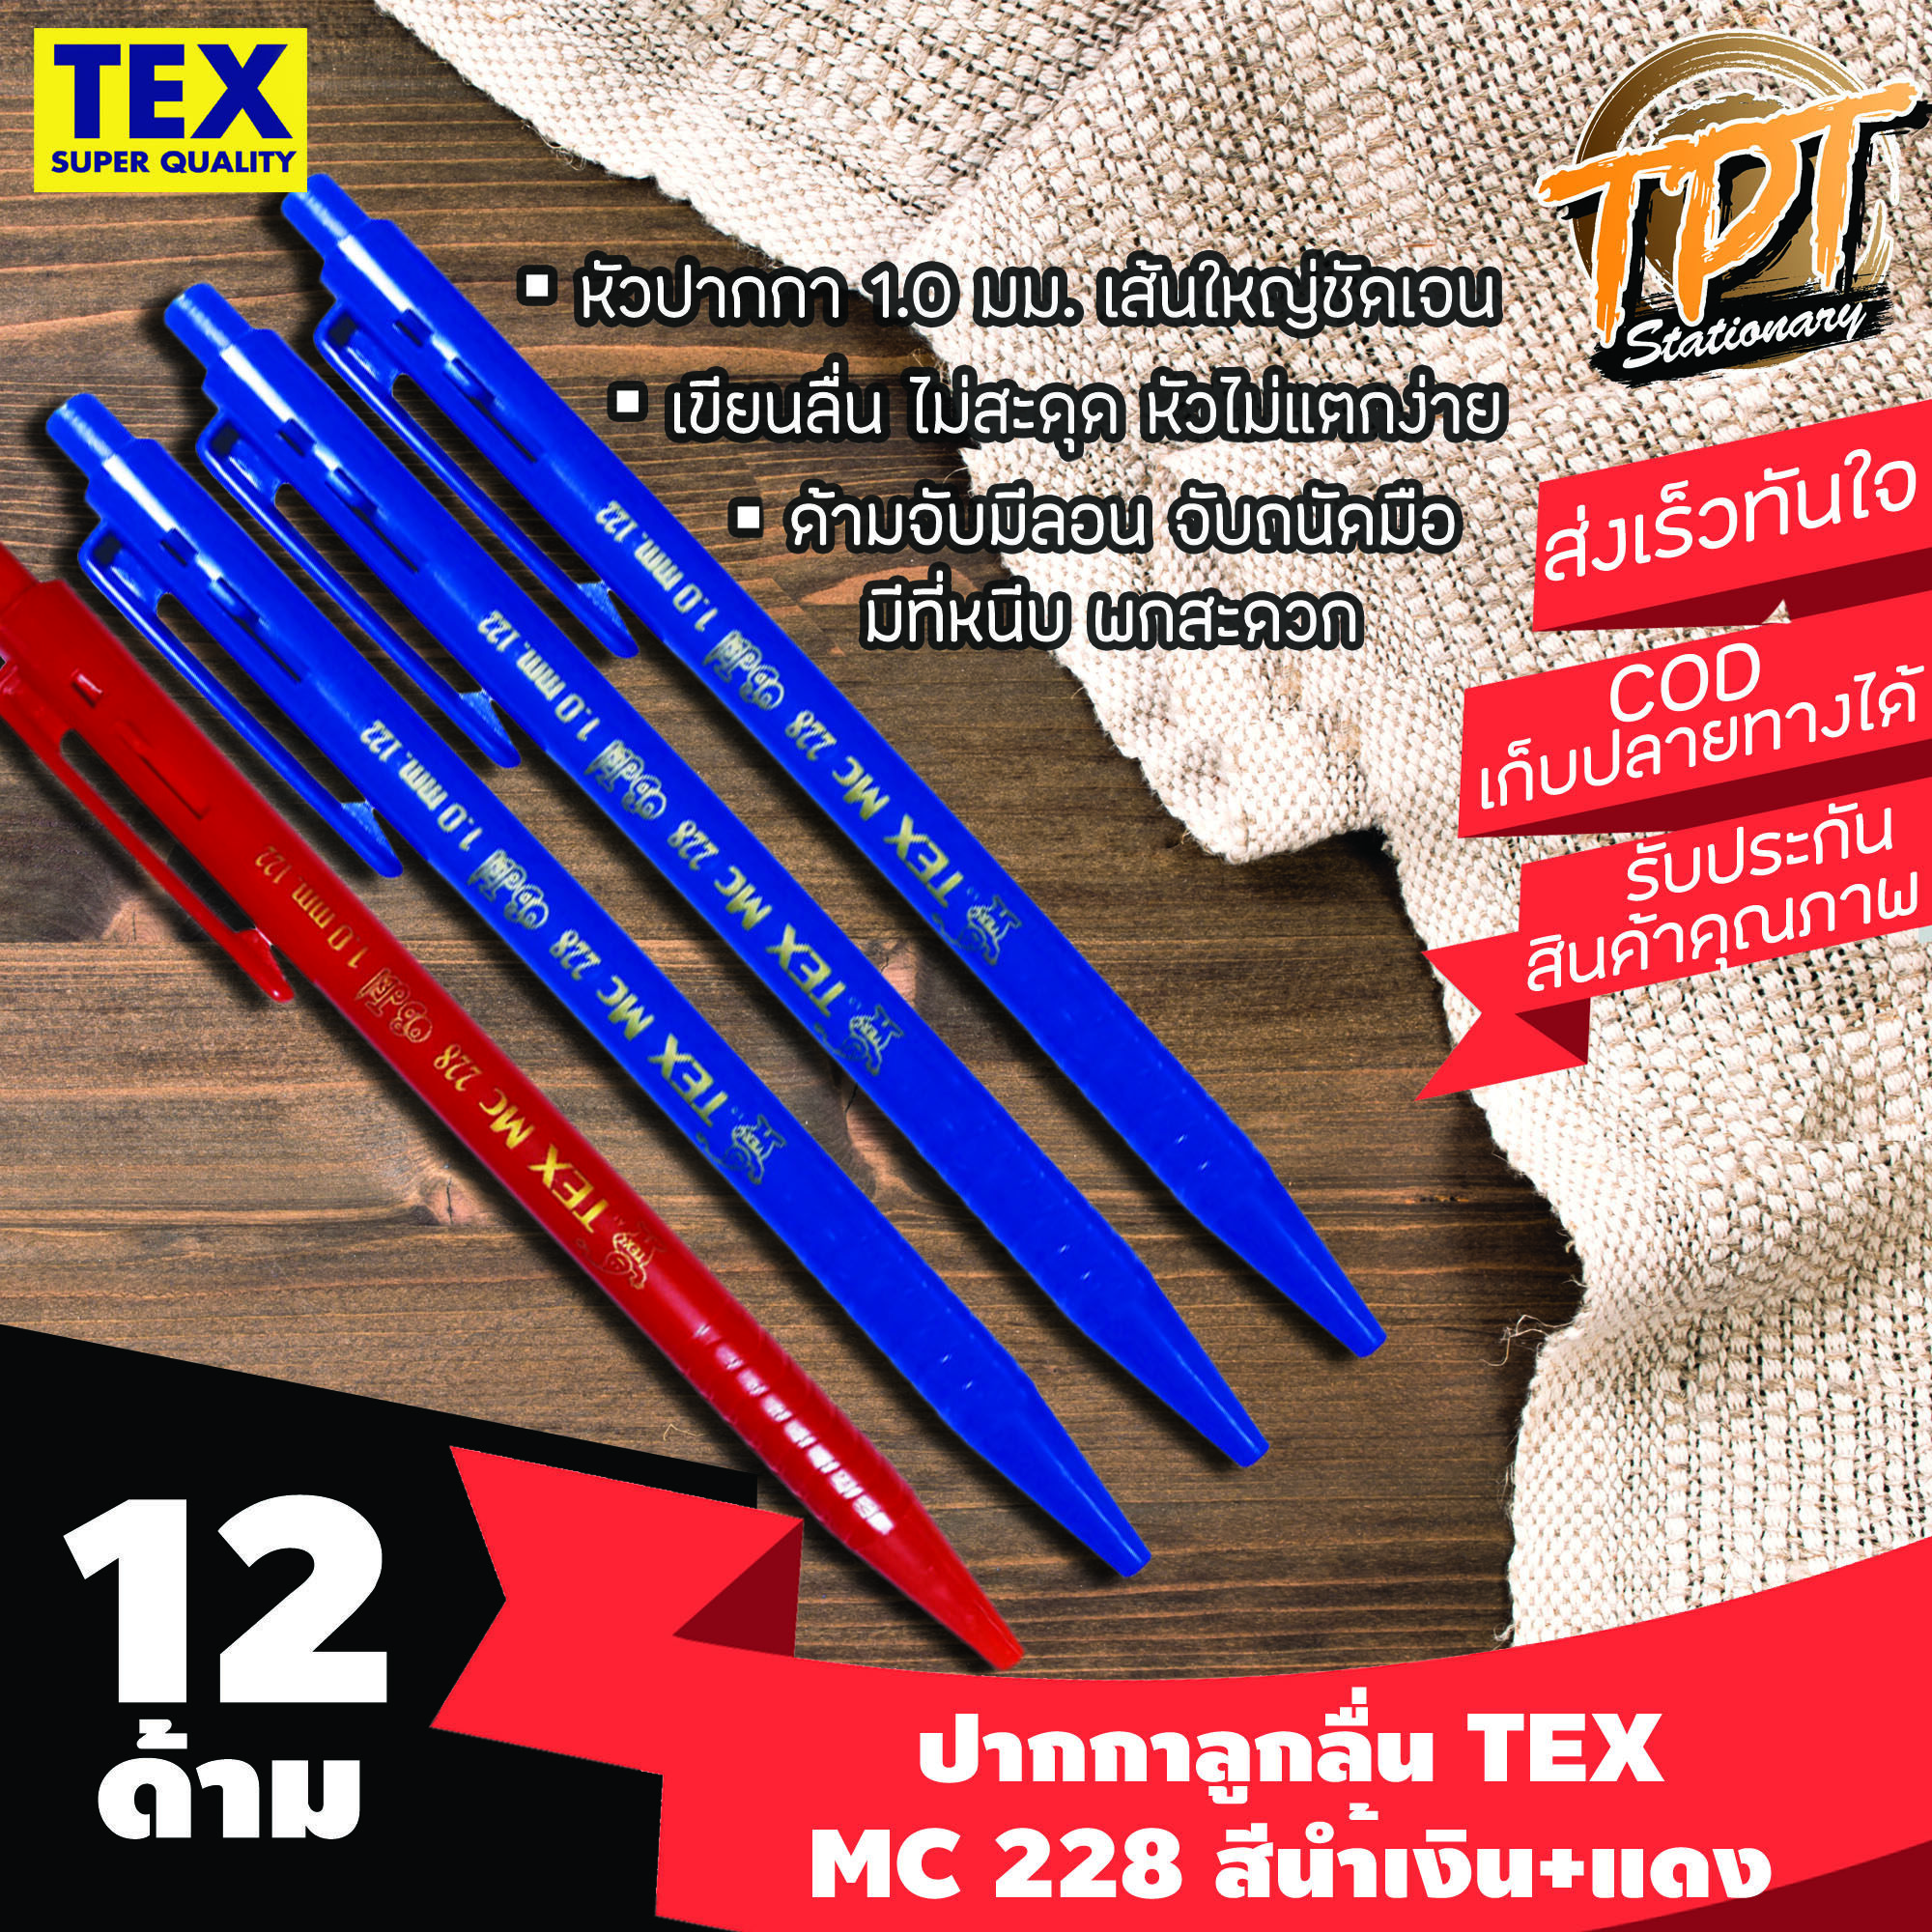 [12ด้าม นํ้าเงิน10 แดง2][เส้นใหญ่ ลื่น ขายดี] ปากกาลูกลื่น Tex เท็กซ์ รุ่น MC 228 STD 1 มม. สีนํ้าเงิน+แดง (Blue+red ball pen TEX MC 228 STD 1 mm)